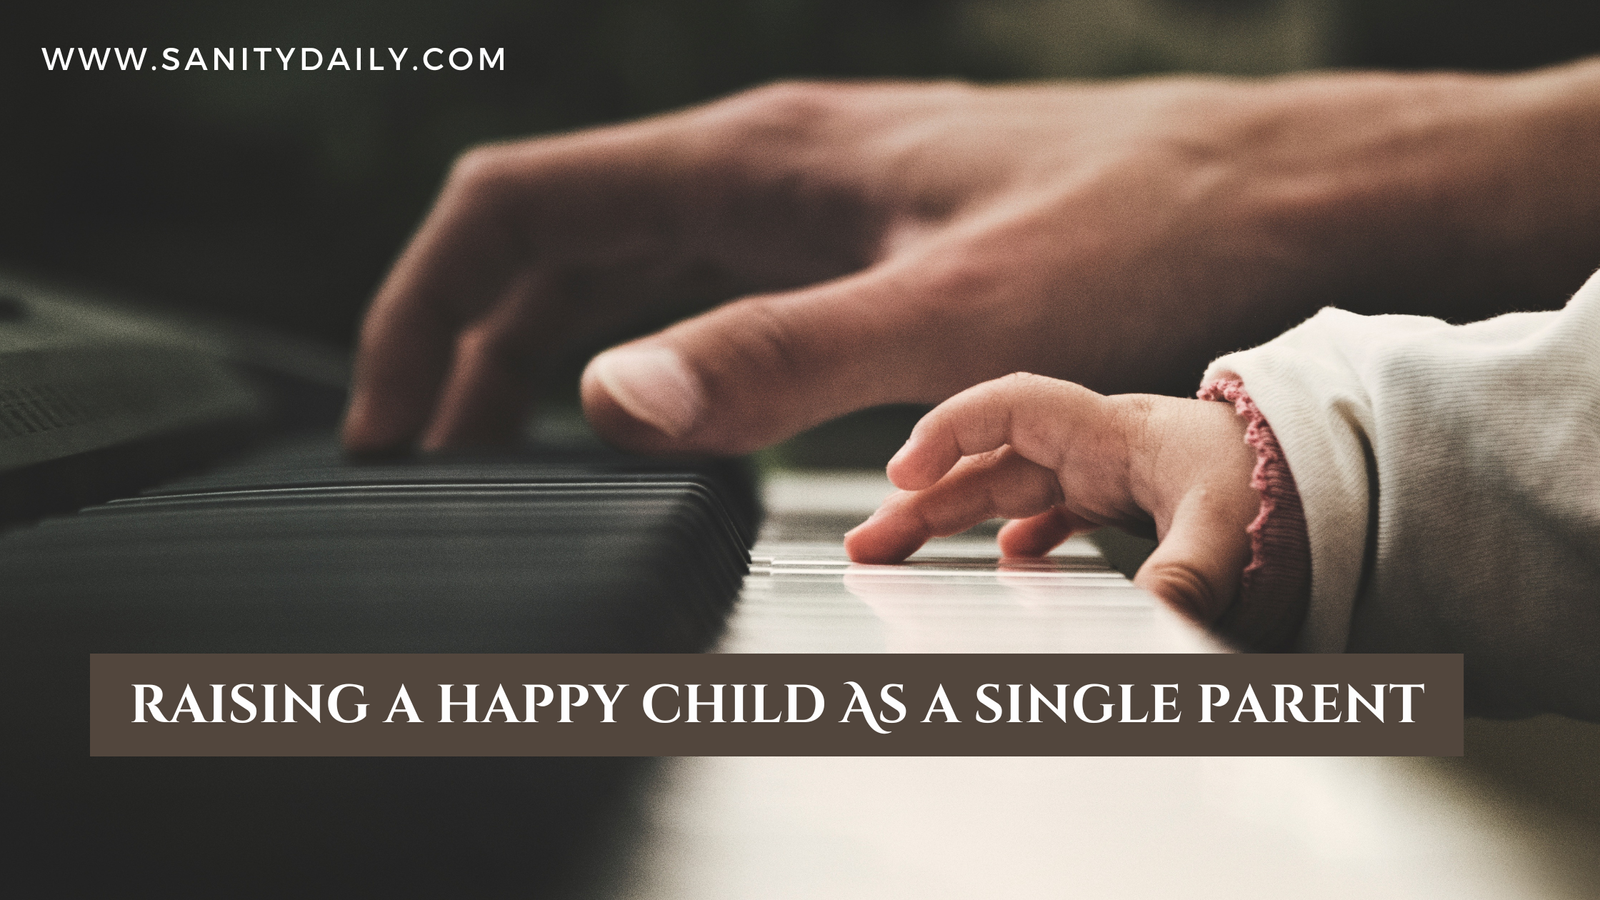 Can a single parent raise a happy child